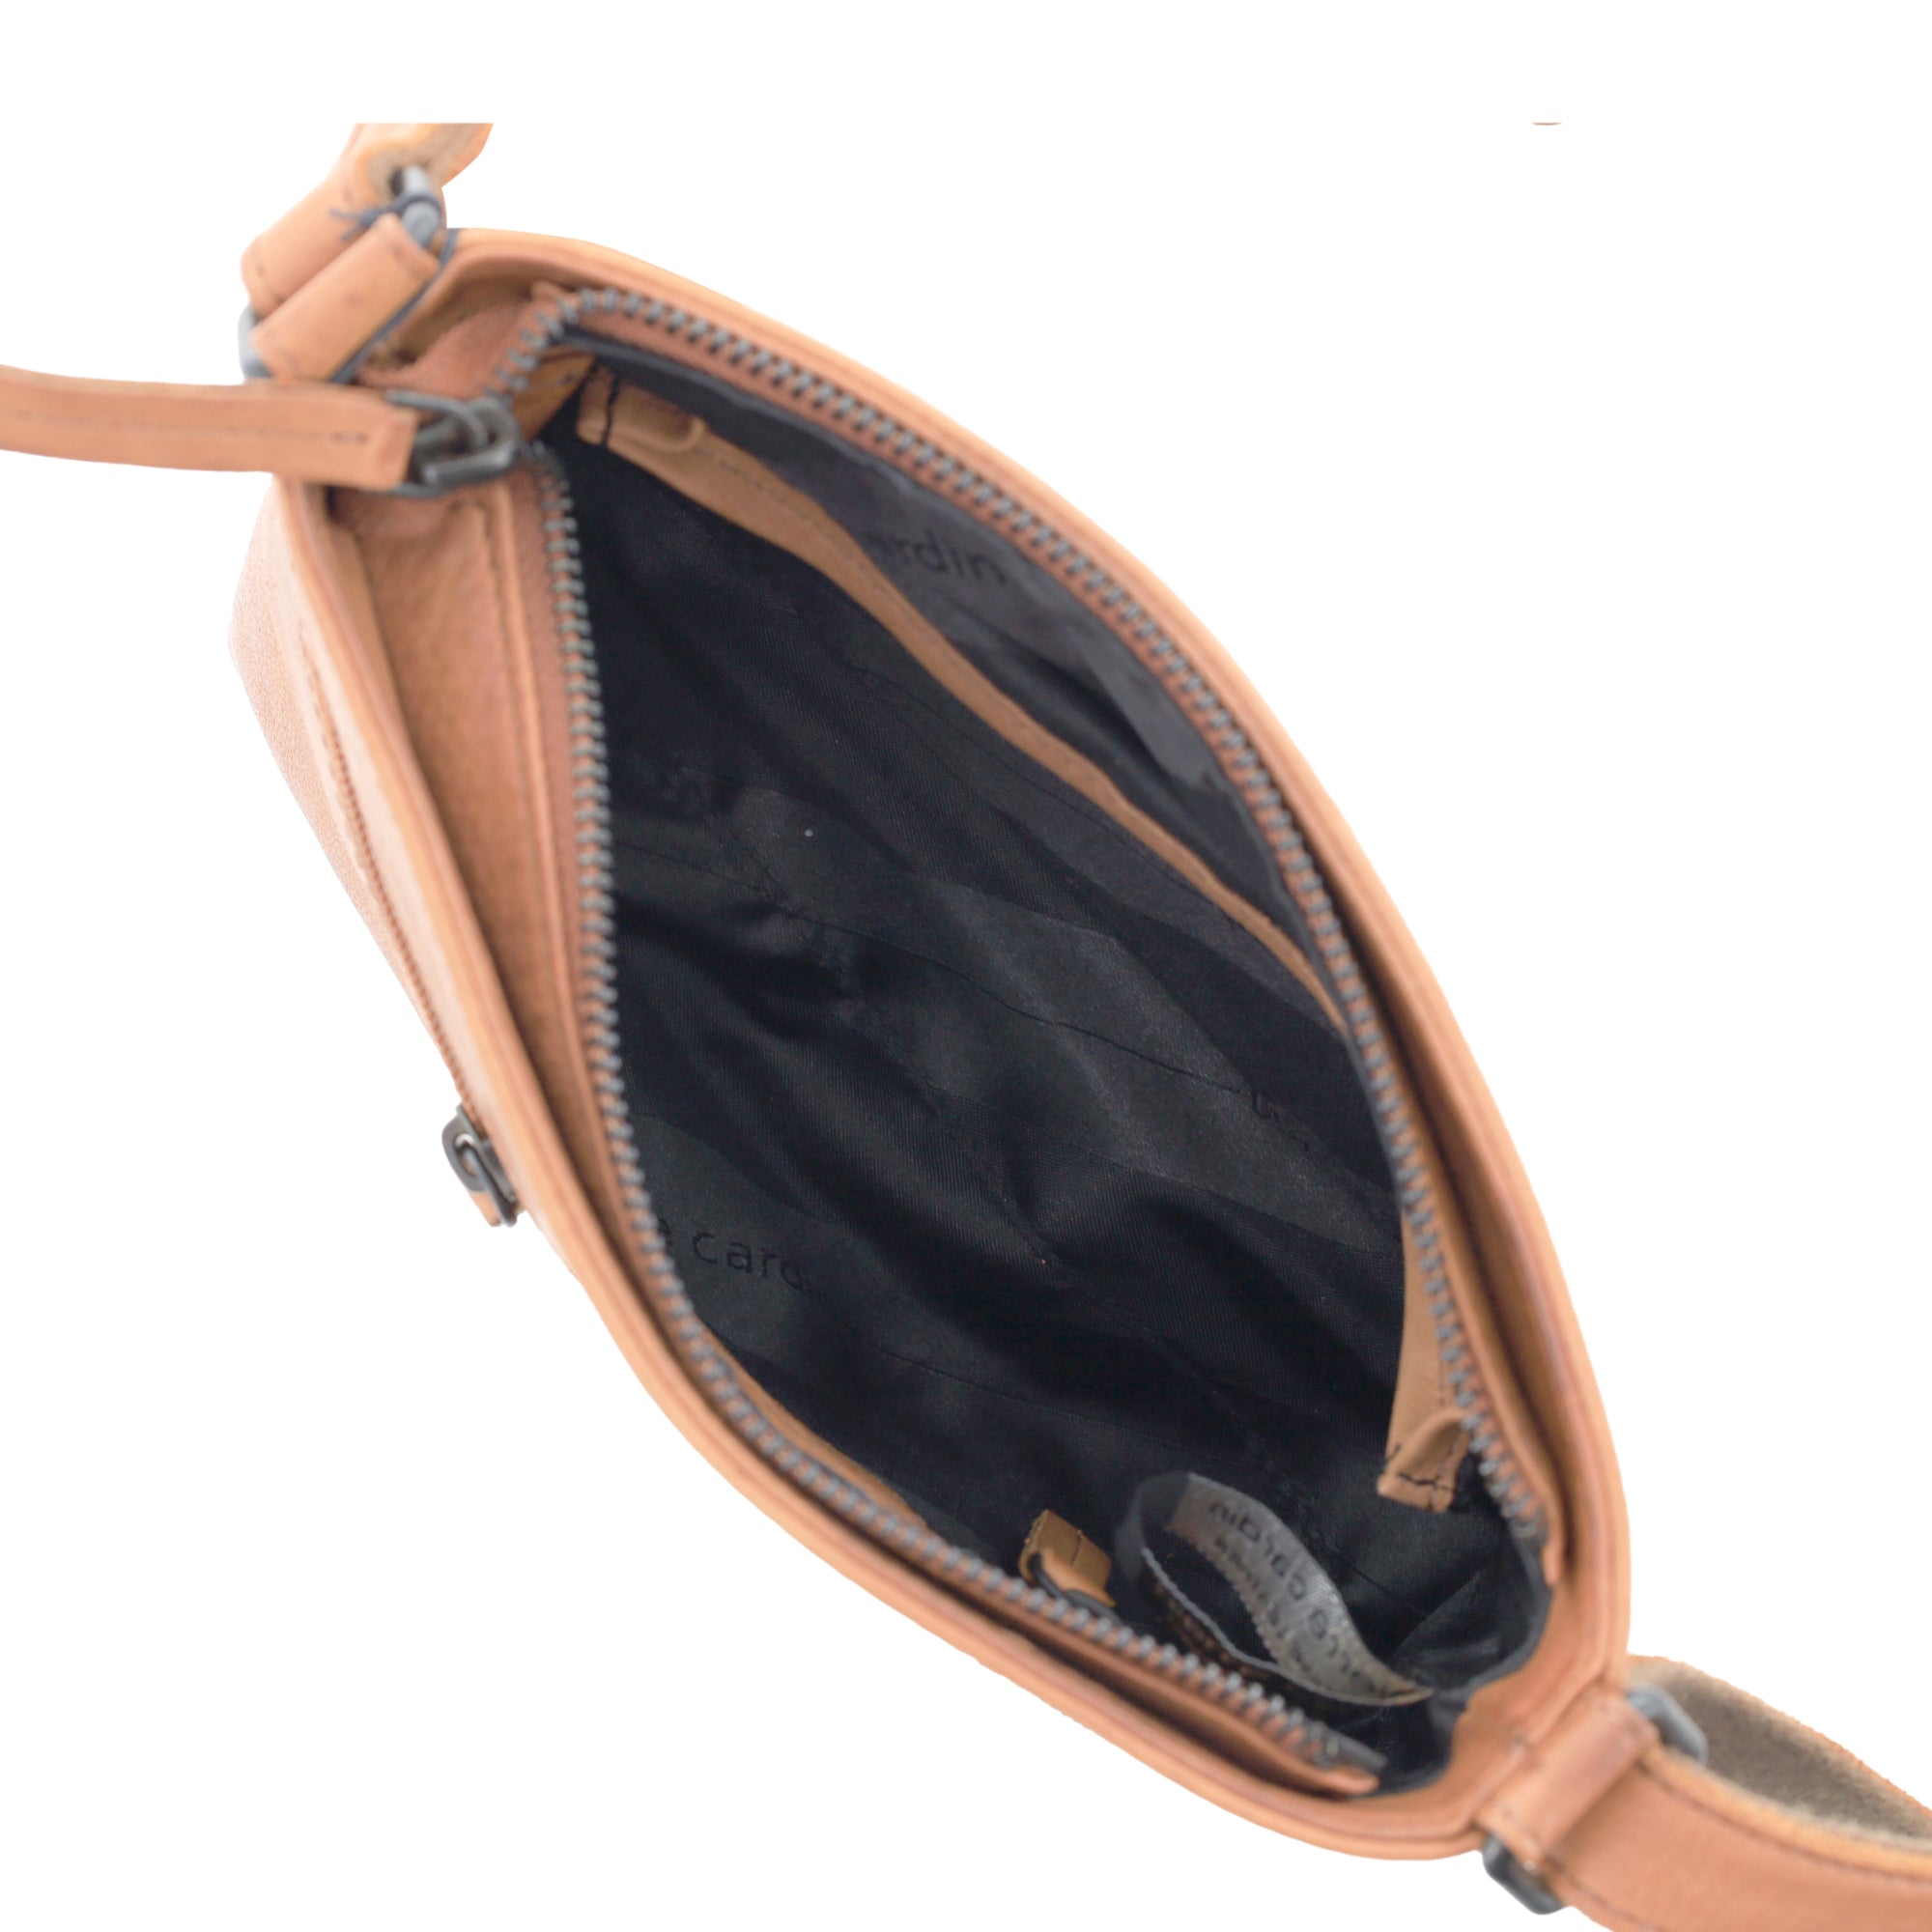 Pierre Cardin Leather Woven Embossed Cross-Body Bag in Cognac